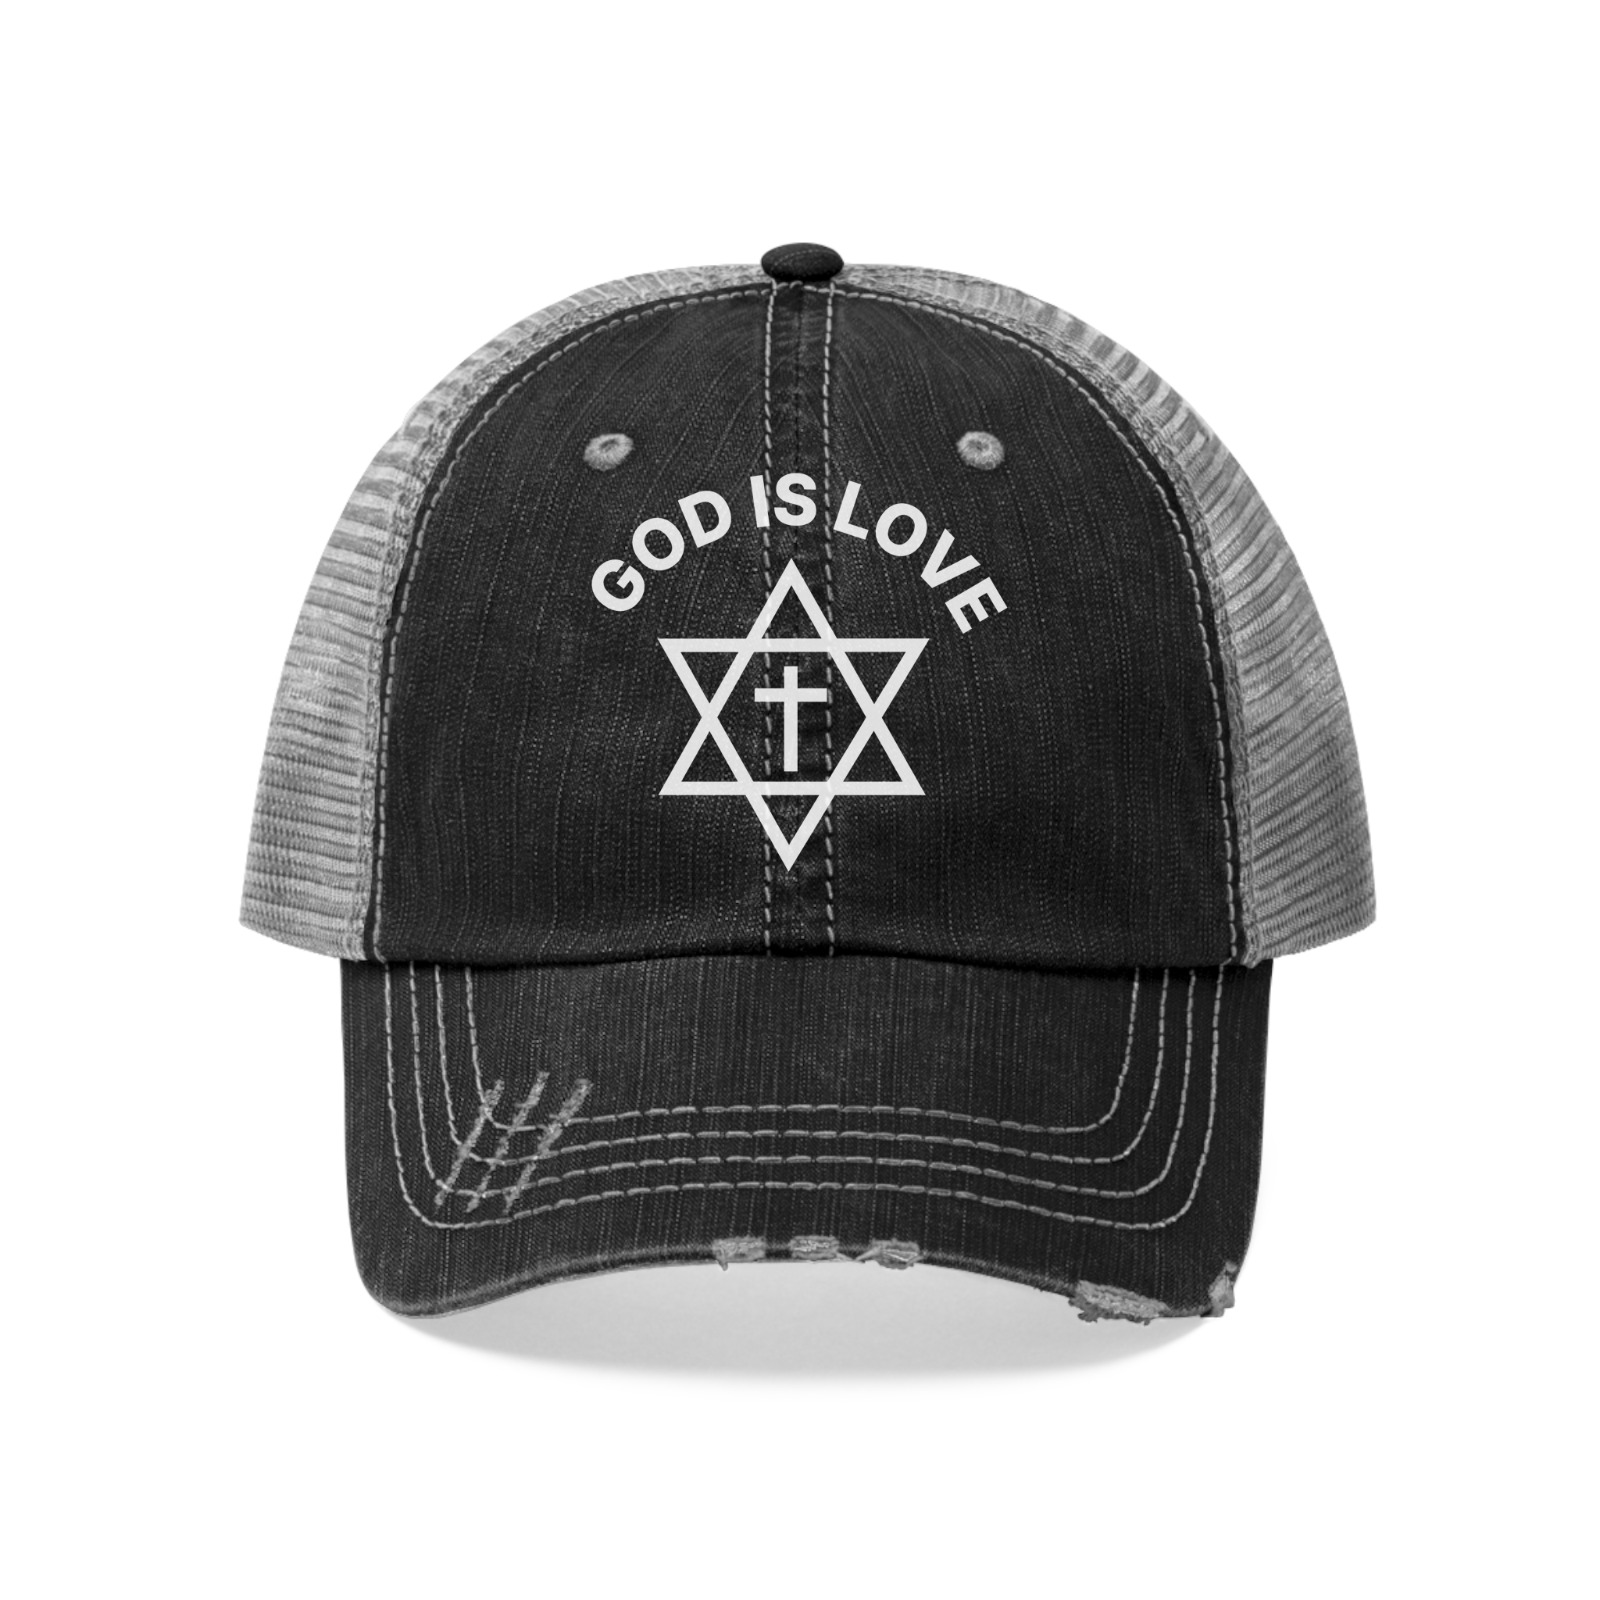 God Is Love Trucker Hat